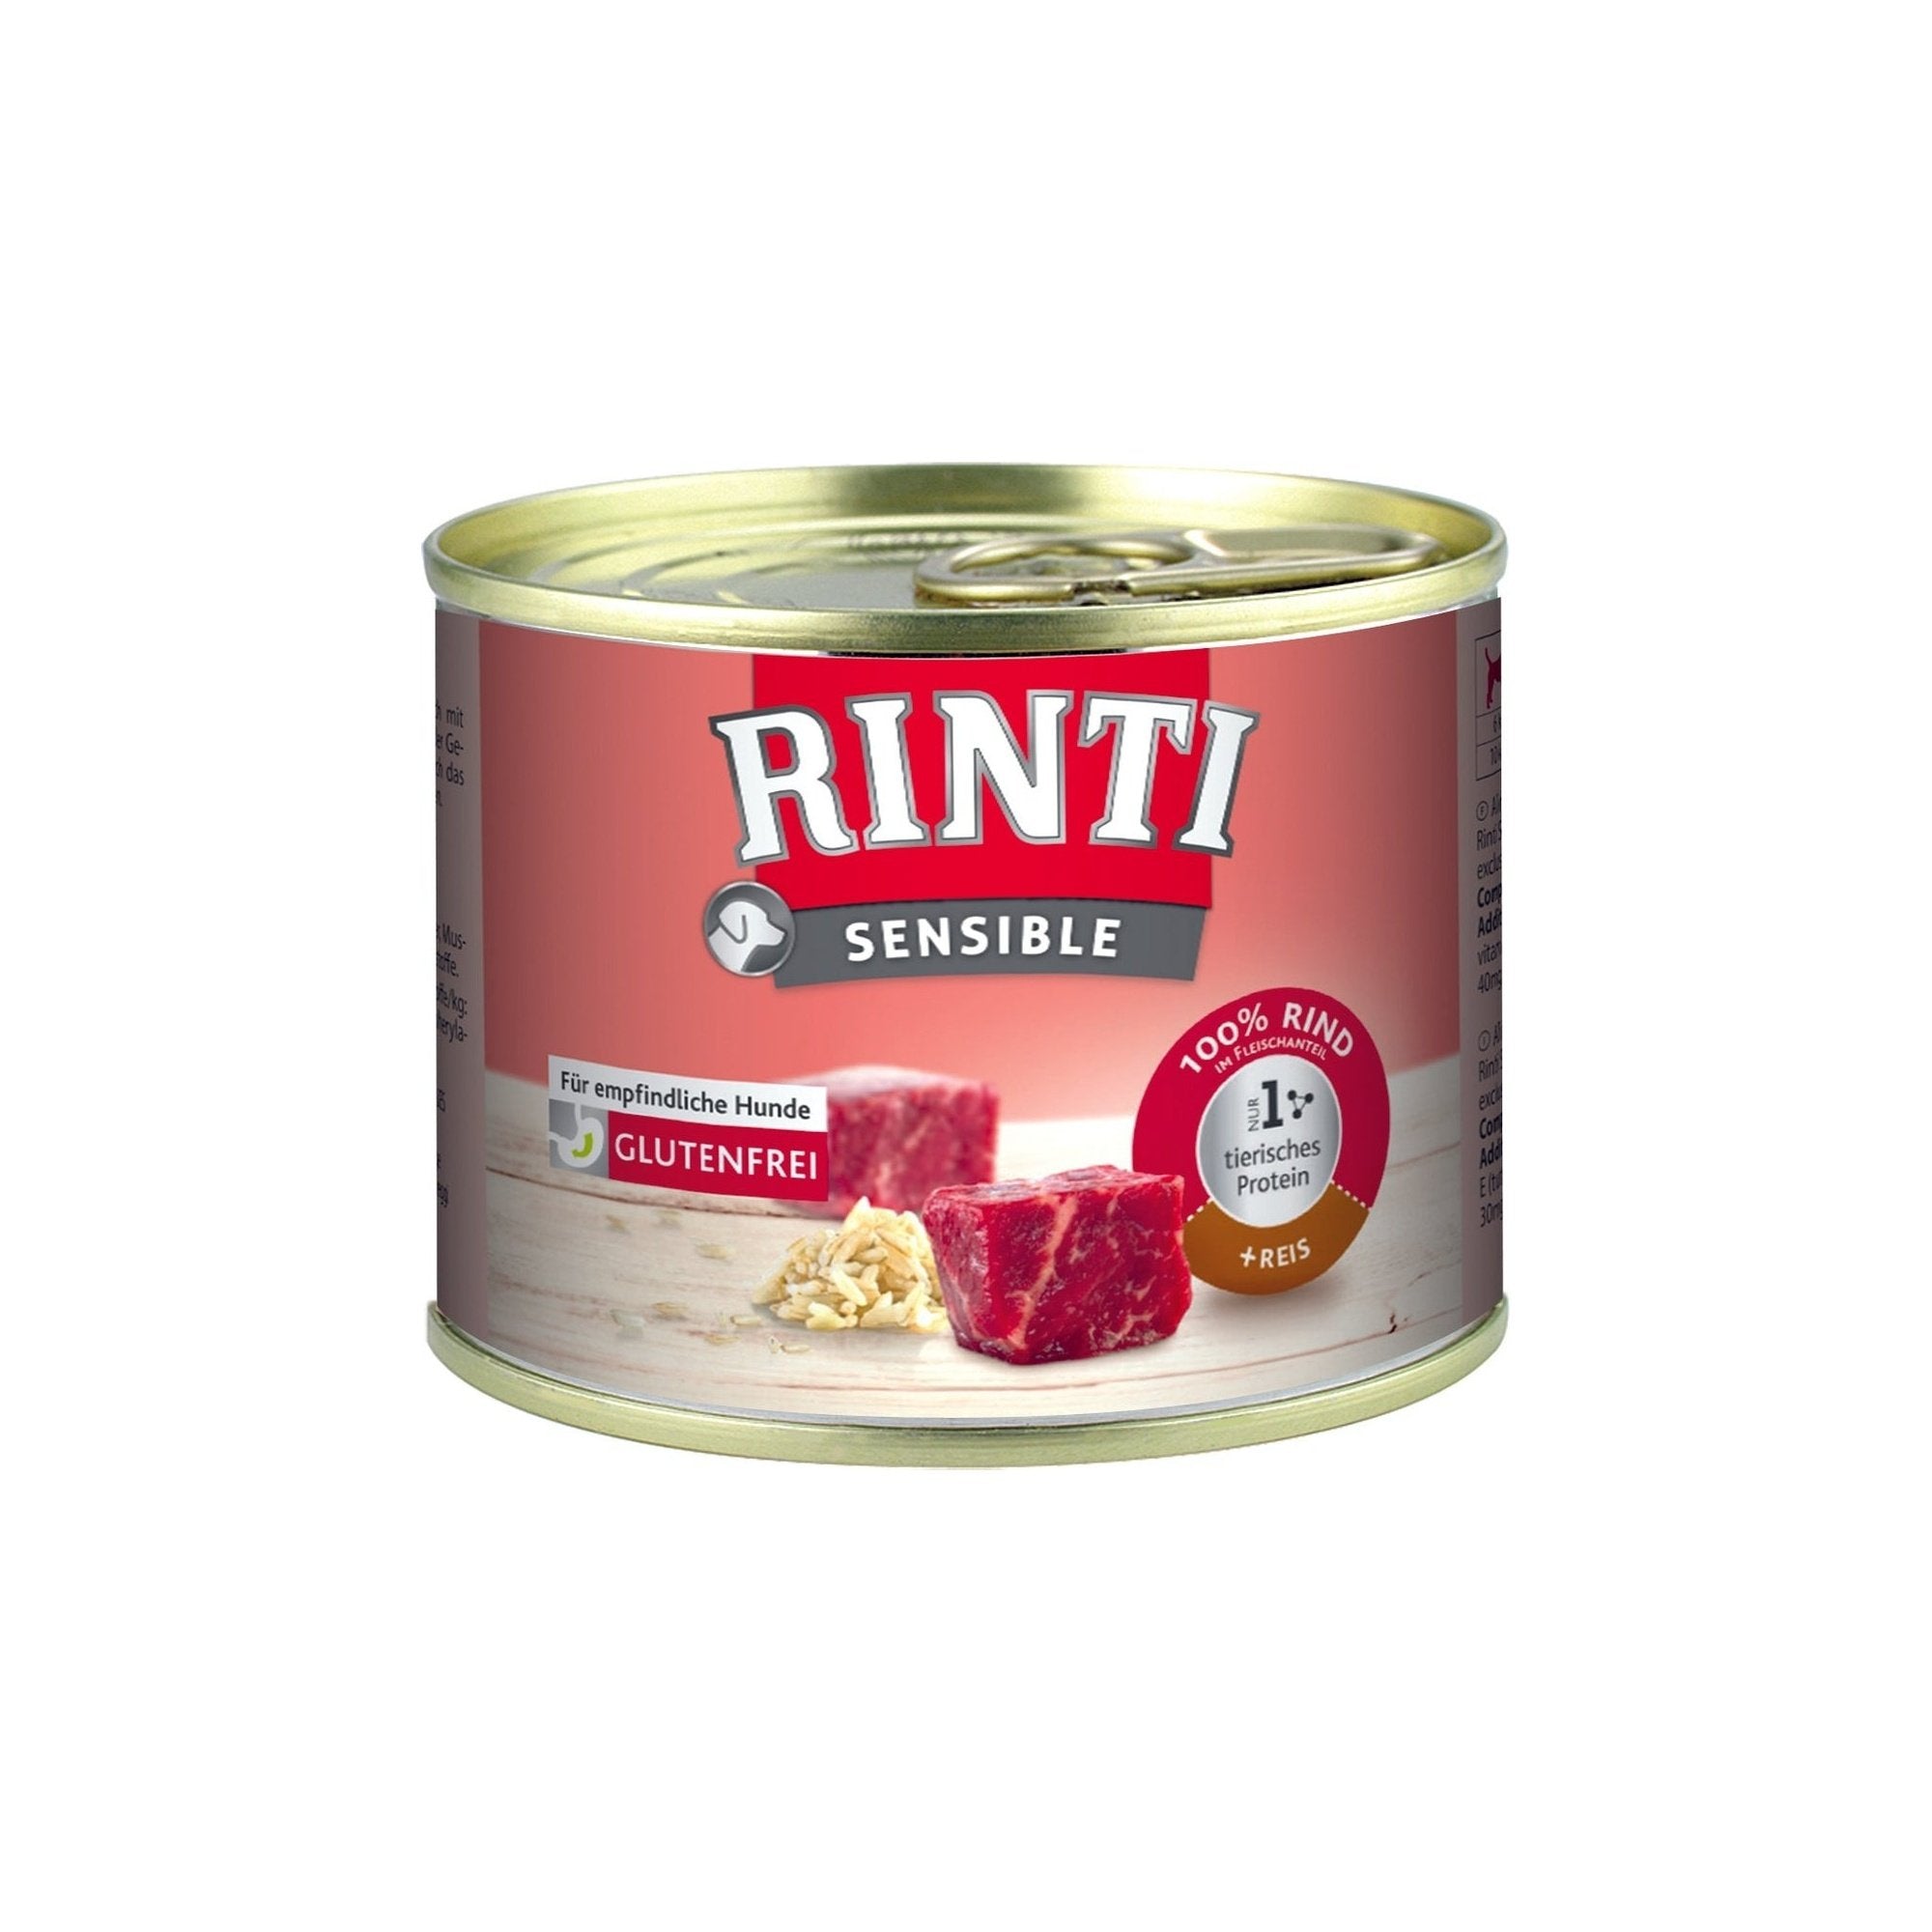 Artikel mit dem Namen Rinti Sensible Rind & Reis im Shop von zoo.de , dem Onlineshop für nachhaltiges Hundefutter und Katzenfutter.